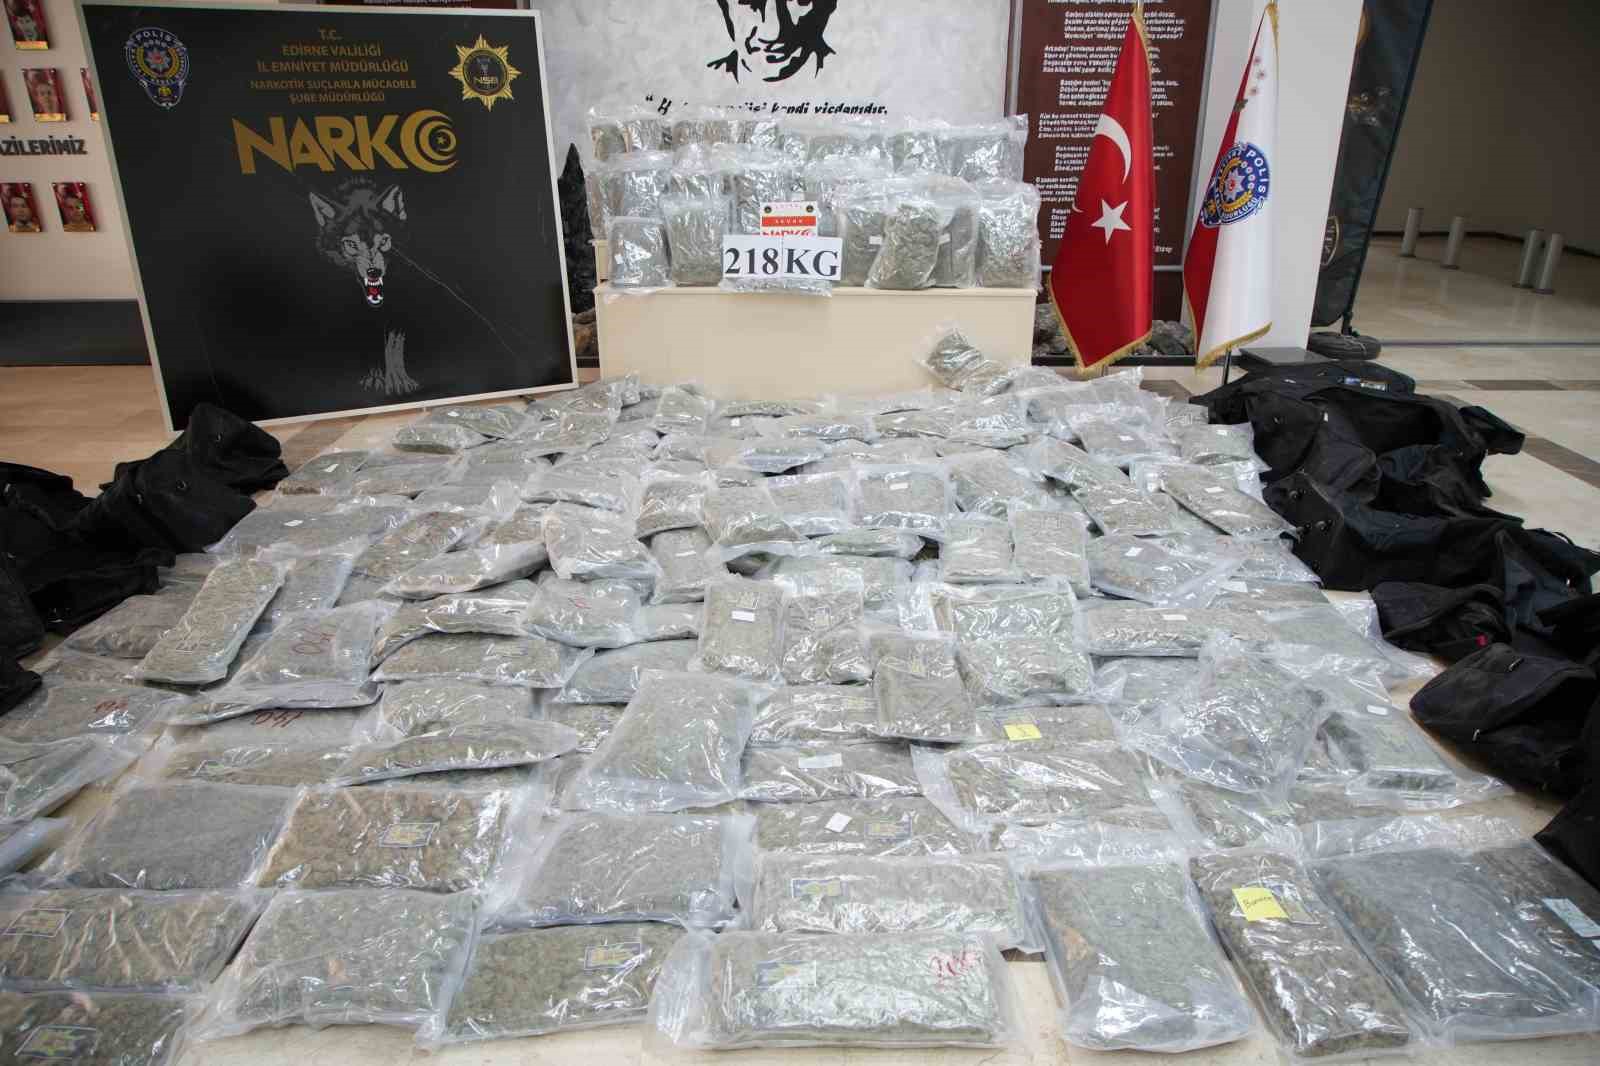 Türkiye’ye valizler dolusu uyuşturucu sokacaklardı: 218 kilogram skunk ele geçirildi
